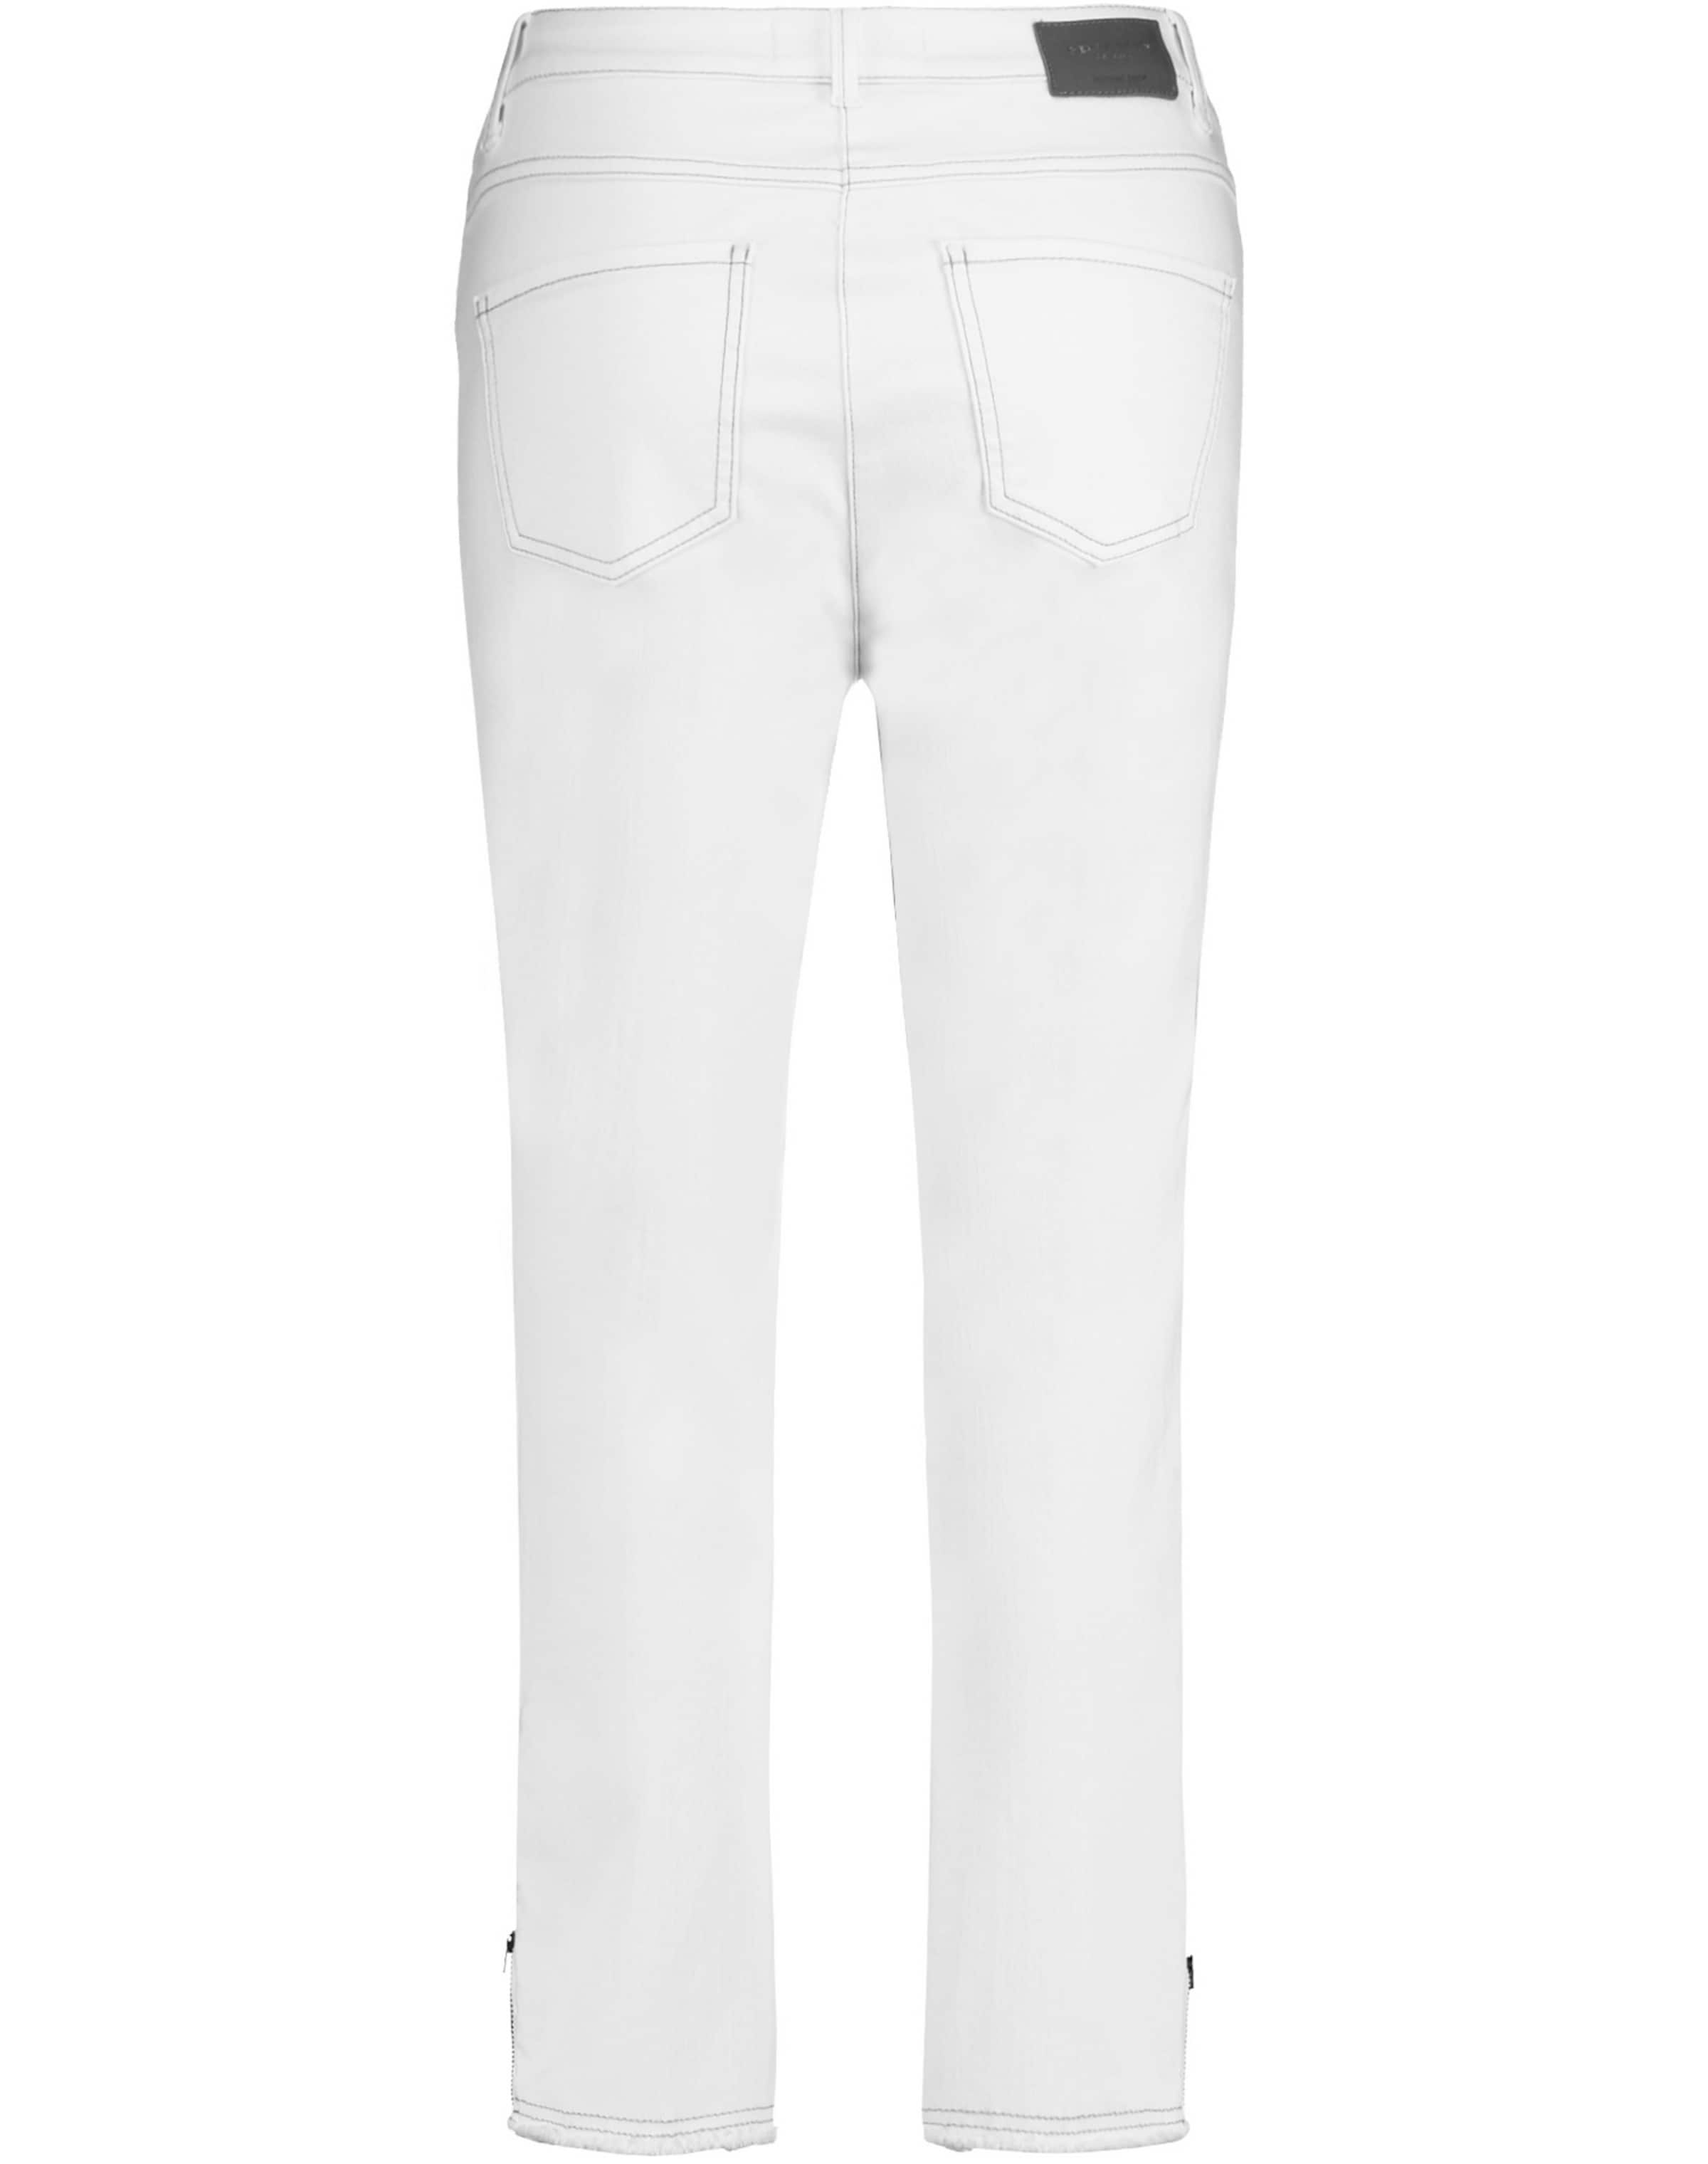 GERRY WEBER Jeans in Weiß 